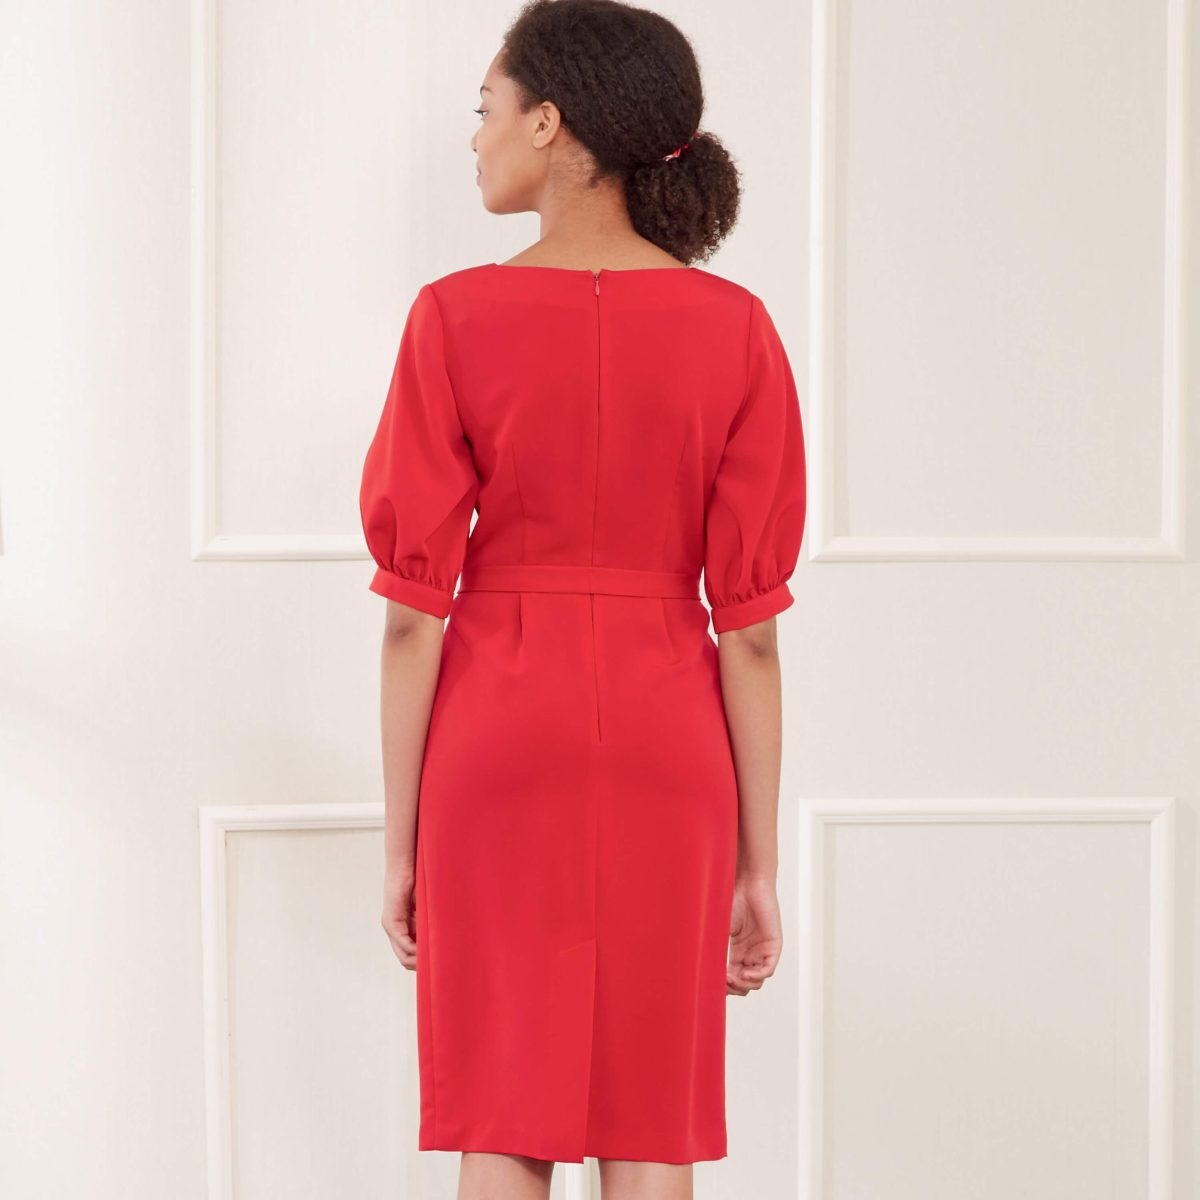 New Look Sewing Pattern N6679 Misses' Dress